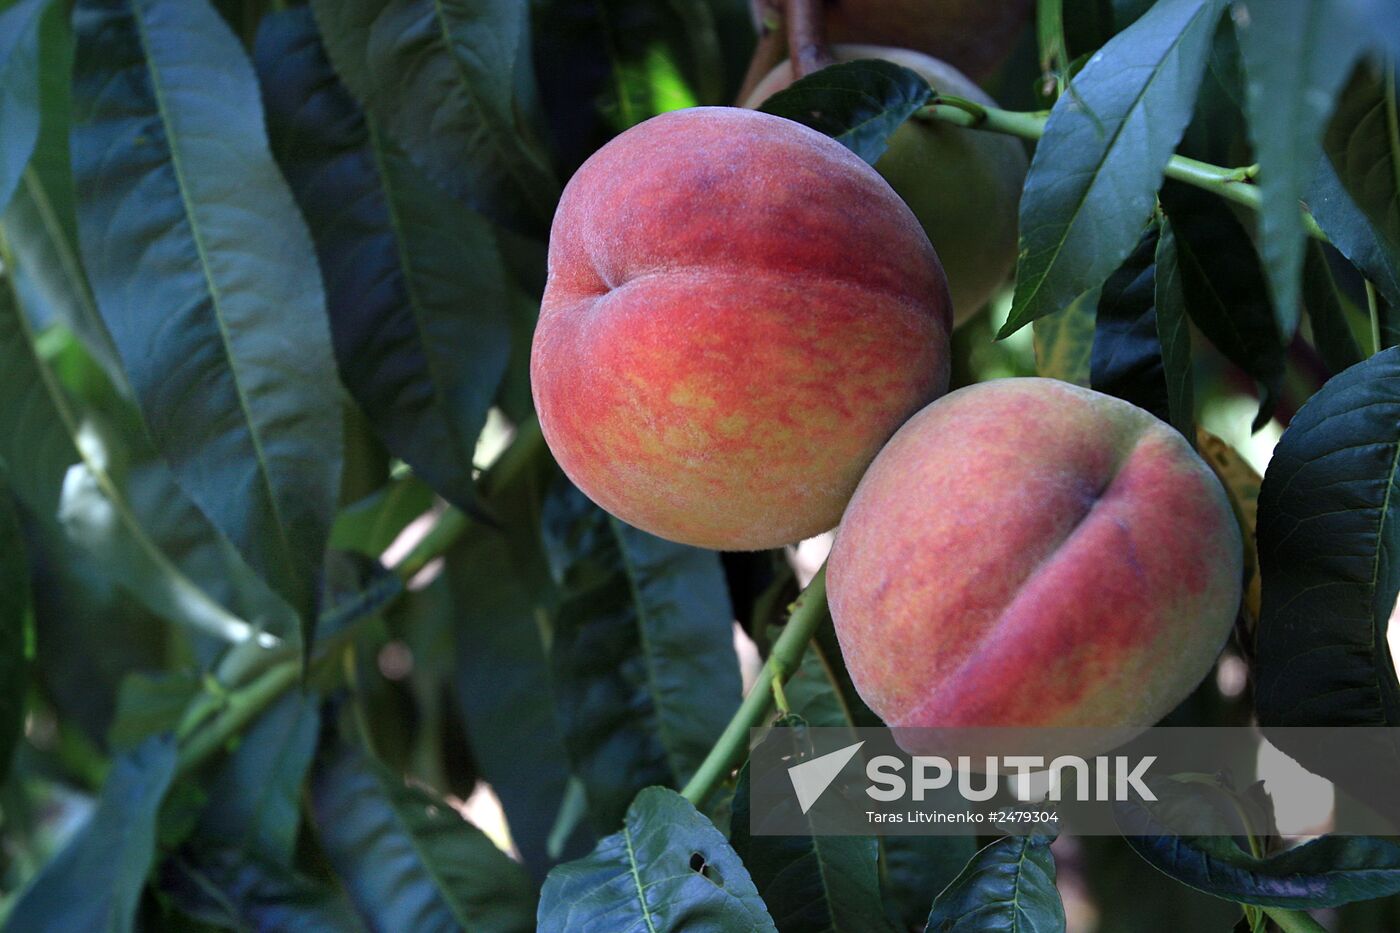 Picking peaches in Simferopol